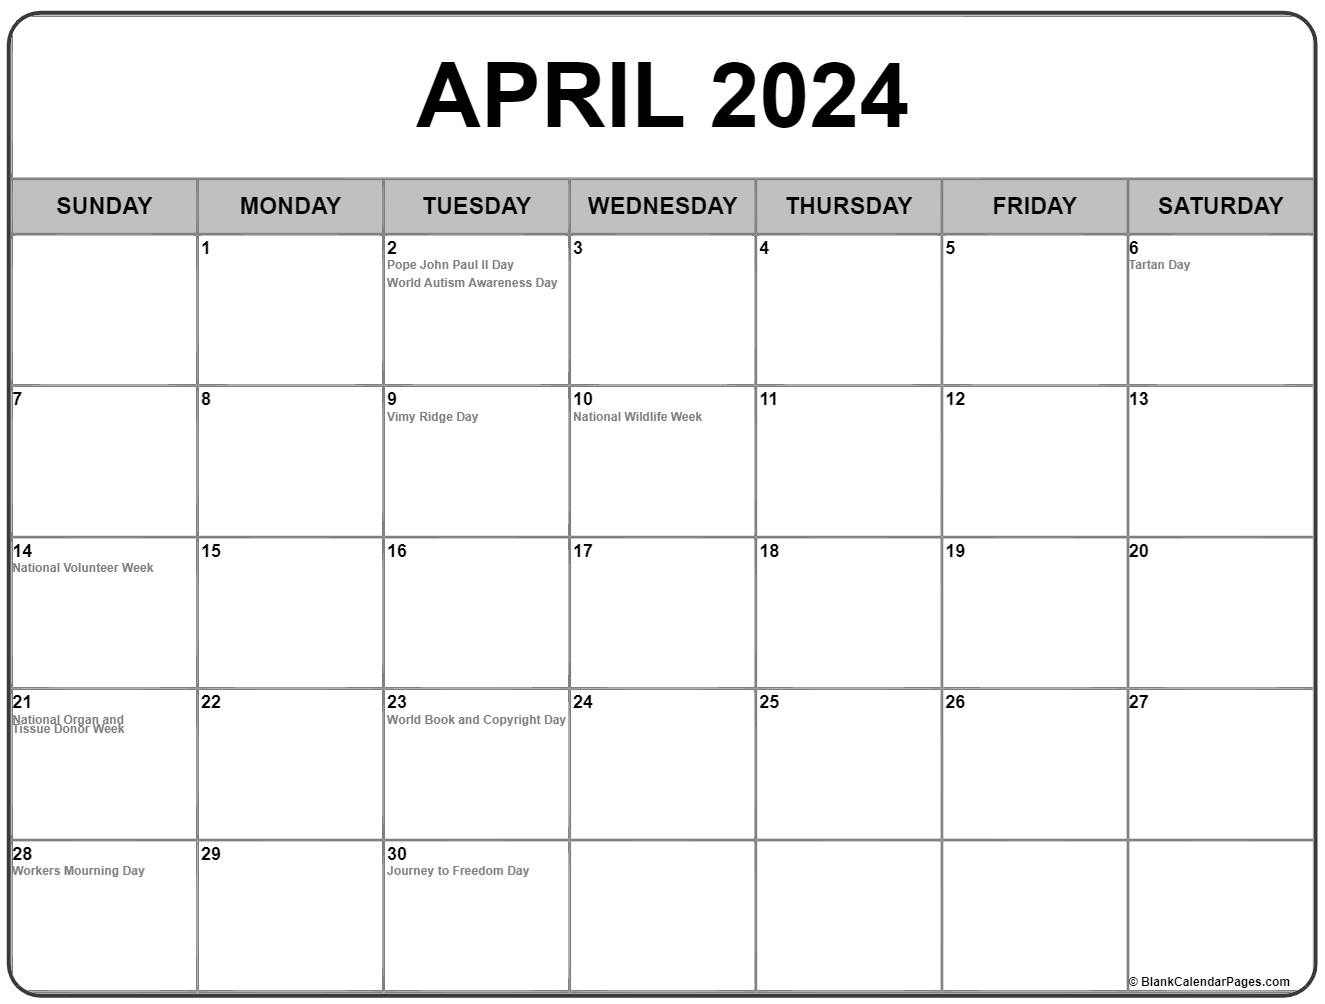 april 2021 calendar with us holidays April 2021 Calendar With Holidays april 2021 calendar with us holidays